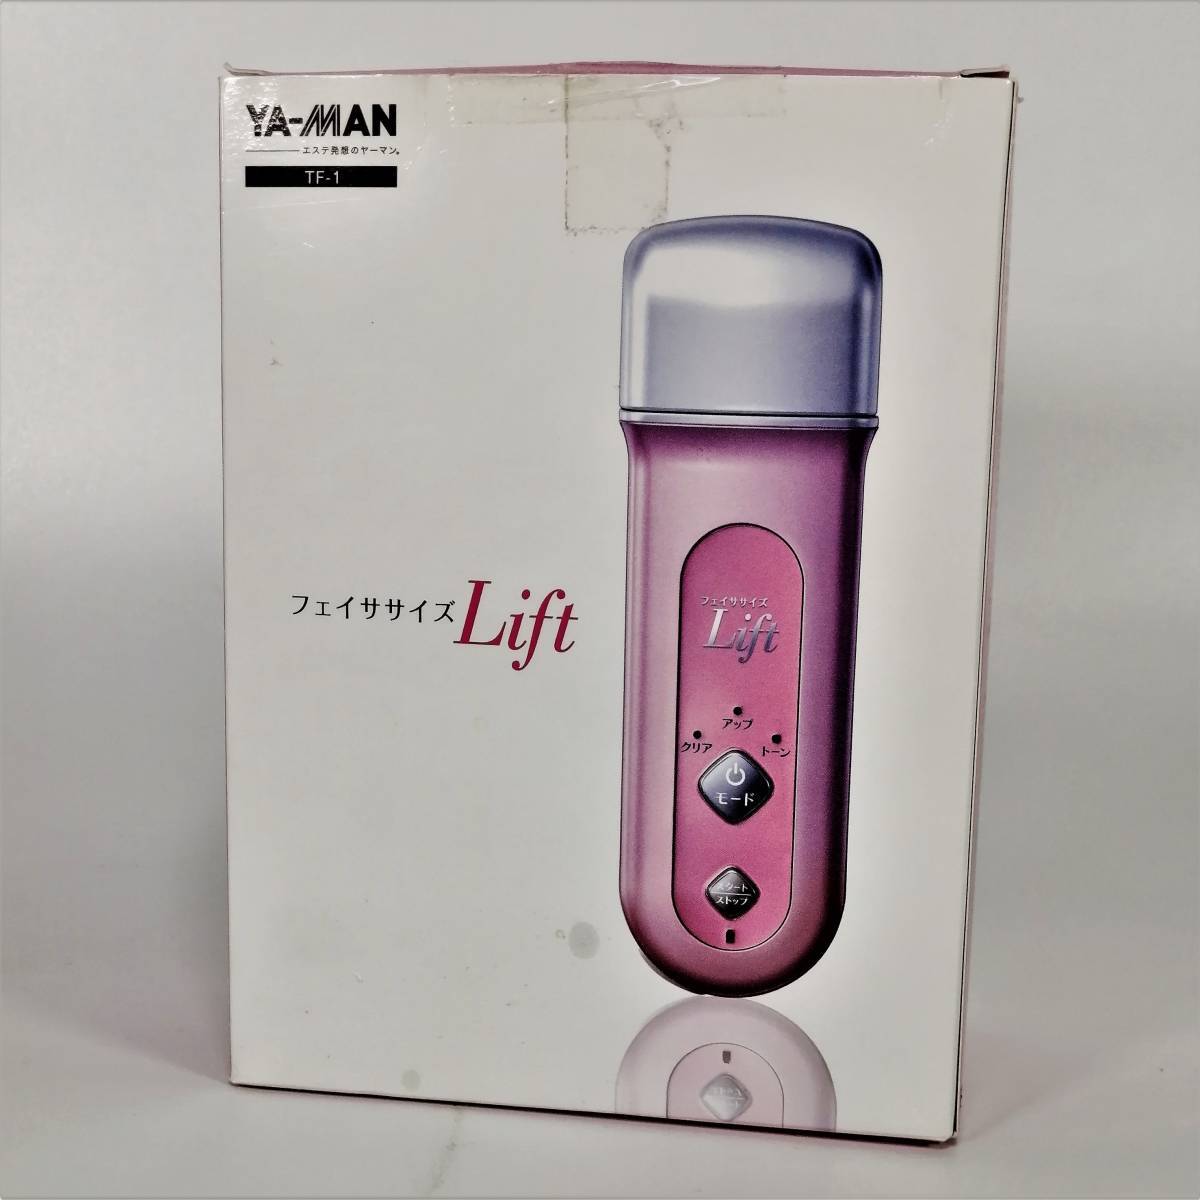 美品 ヤーマン フェイササイズ Lift ピンク TF-1 家庭用美顔器 フェイサイズゲルU 表情筋 タッピング YA-MAN【USED品】 22 00591_画像8